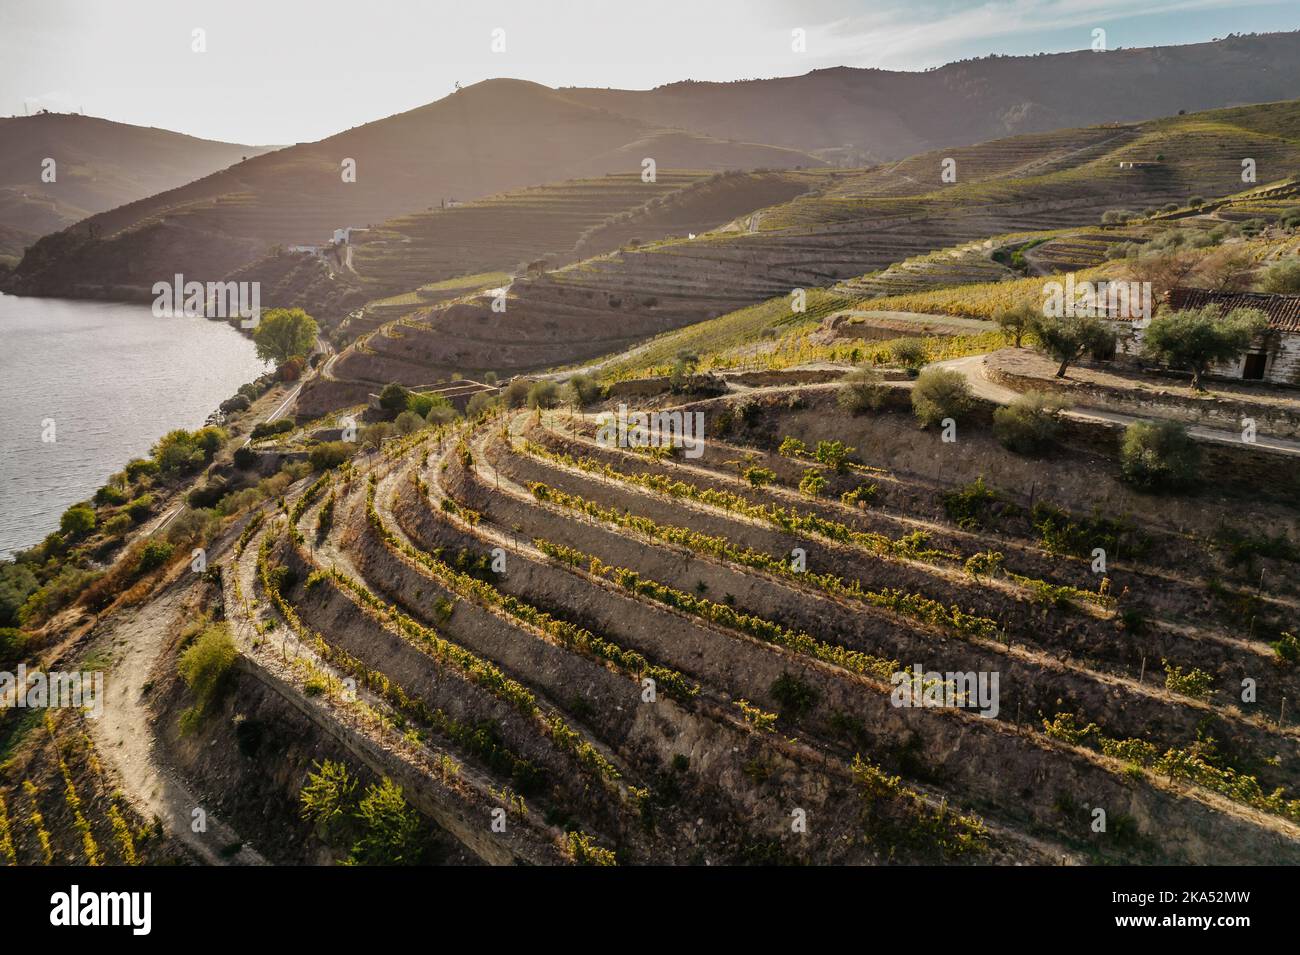 Vue aérienne de la vallée du Douro. Vignobles en terrasse et paysage près de Pinhao, Portugal. Région viticole portugaise. Beau paysage d'automne.Voyage concept Banque D'Images